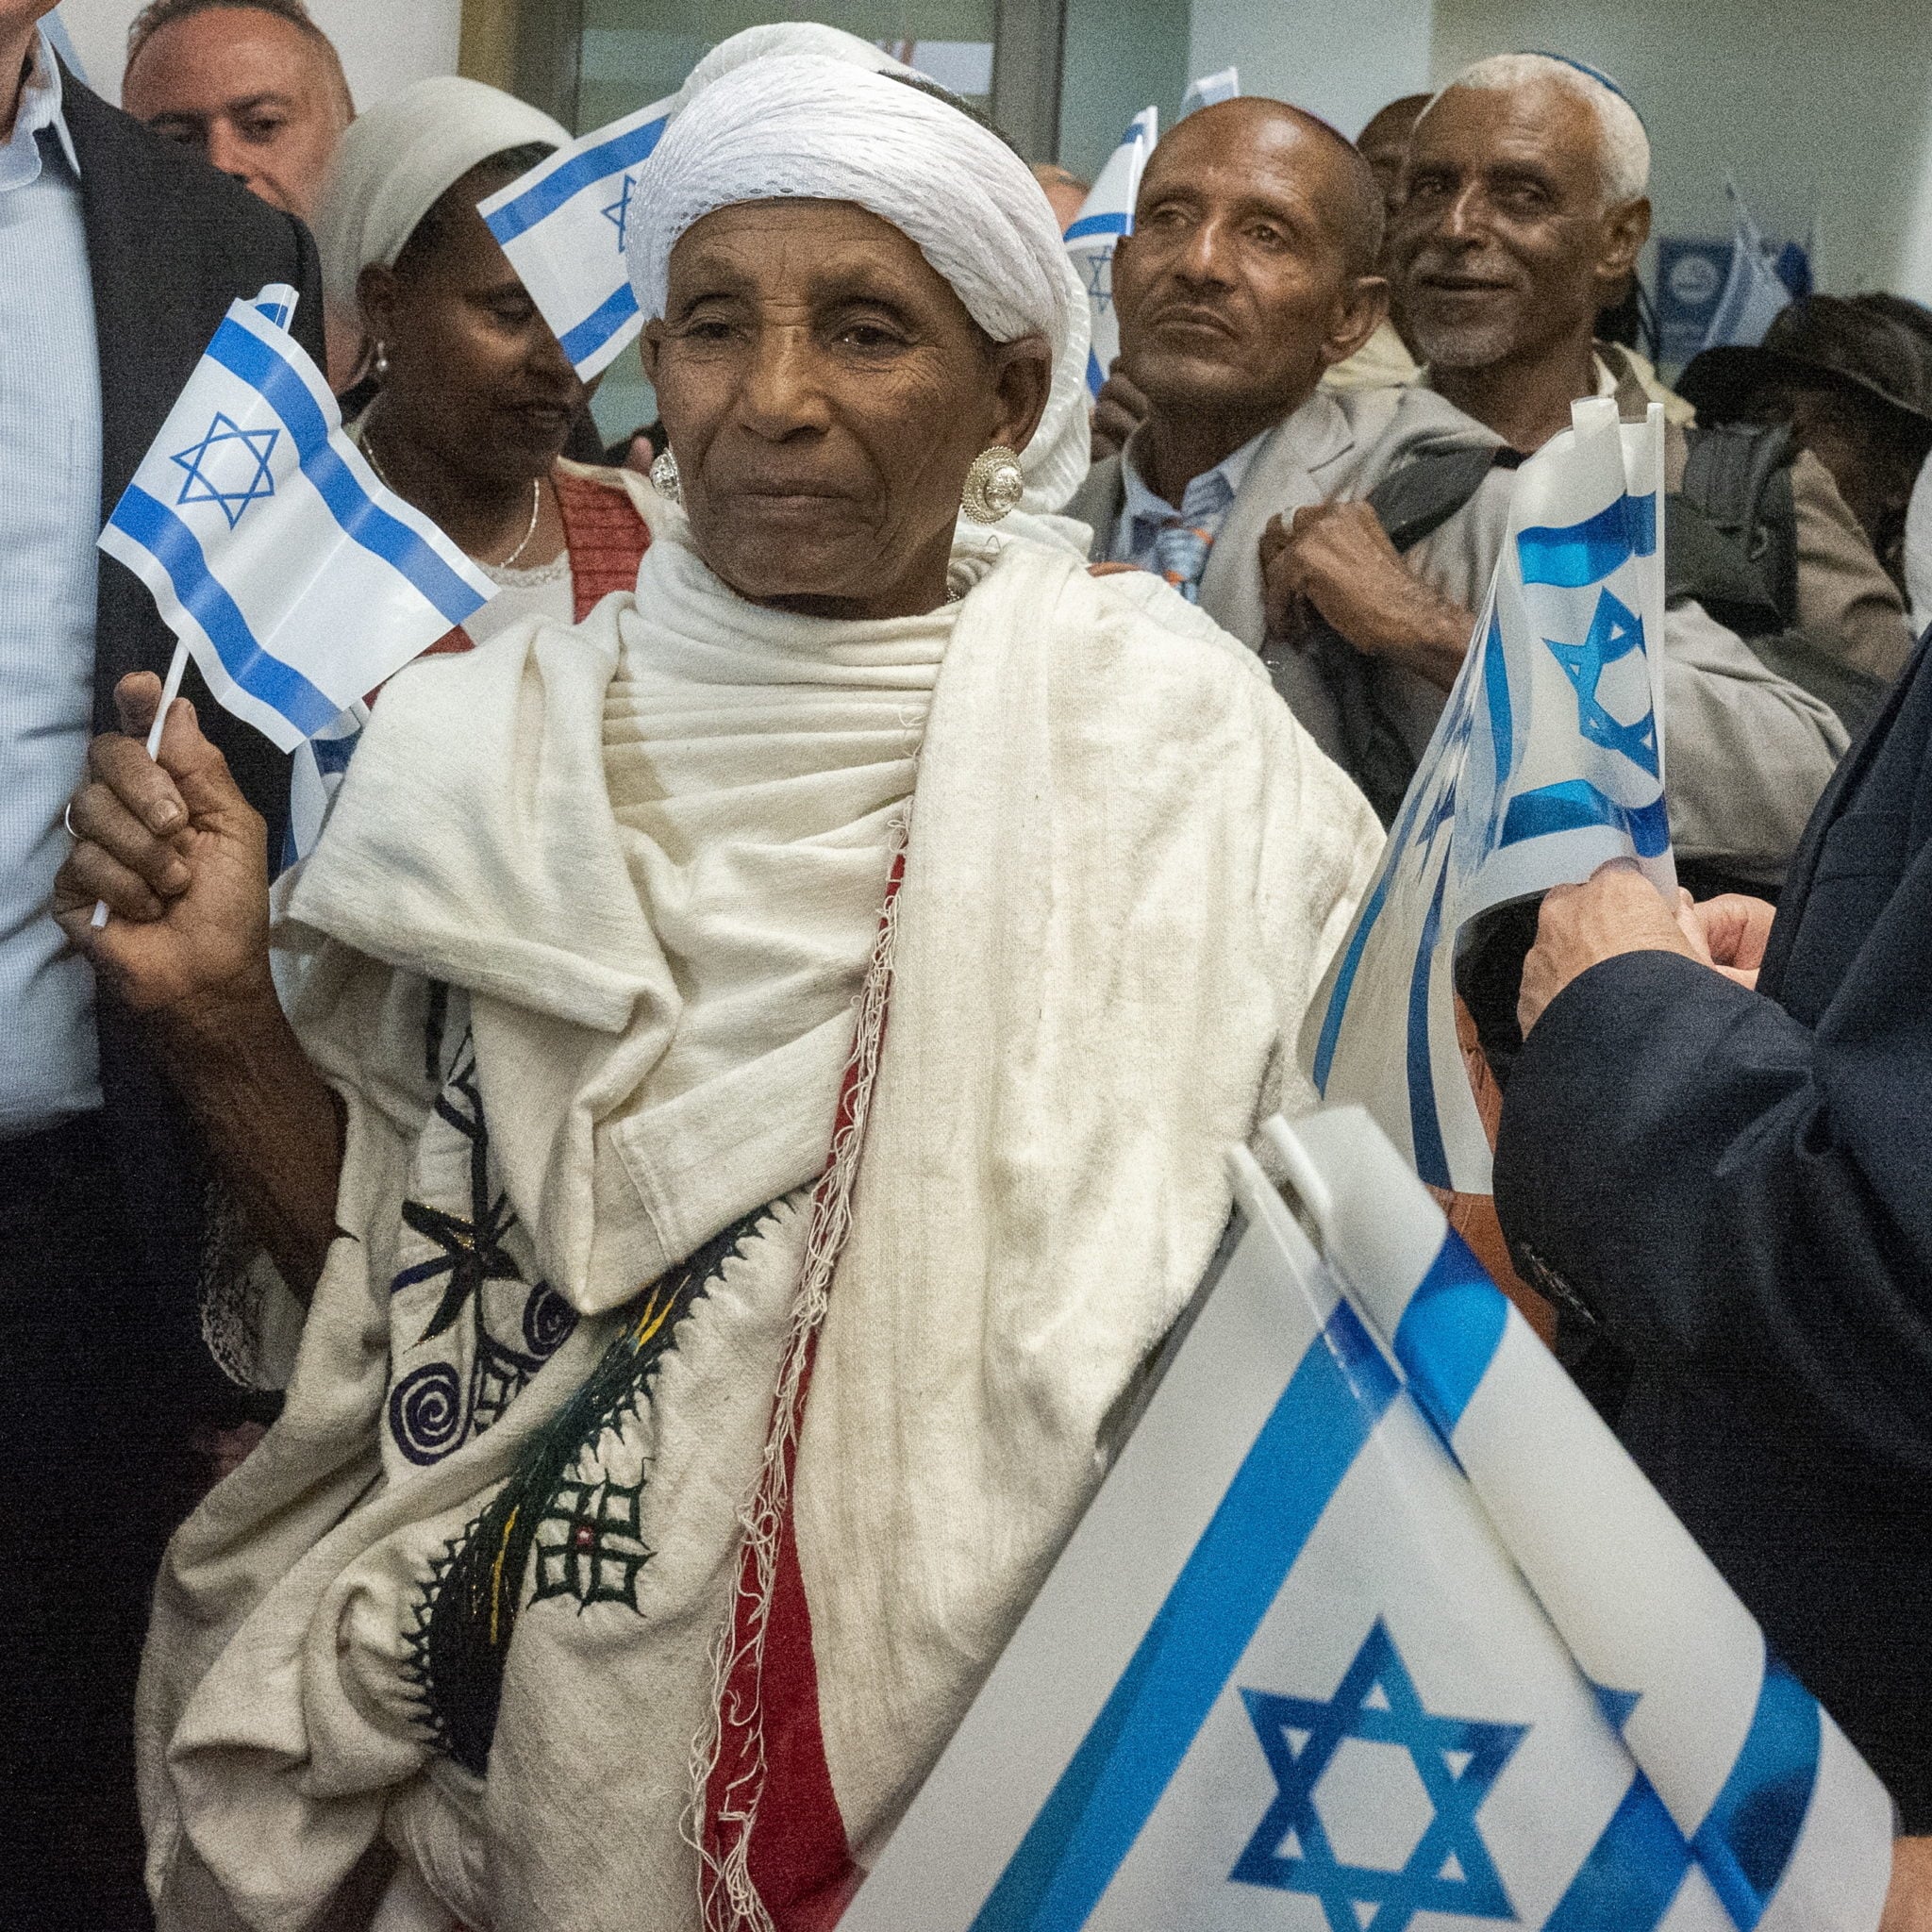 Izrael: etiopscy imigranci odbierają izraelskie flagi po przybyciu do hali przylotów na lotnisku Ben Gurion poza Tel Avivem. Około 80 imigrantów z Etiopii przybyło do Izraela, dołączy do etiopskich imigrantów, którzy są już w Izraelu, fot. JIM HOLLANDER, PAP/EPA